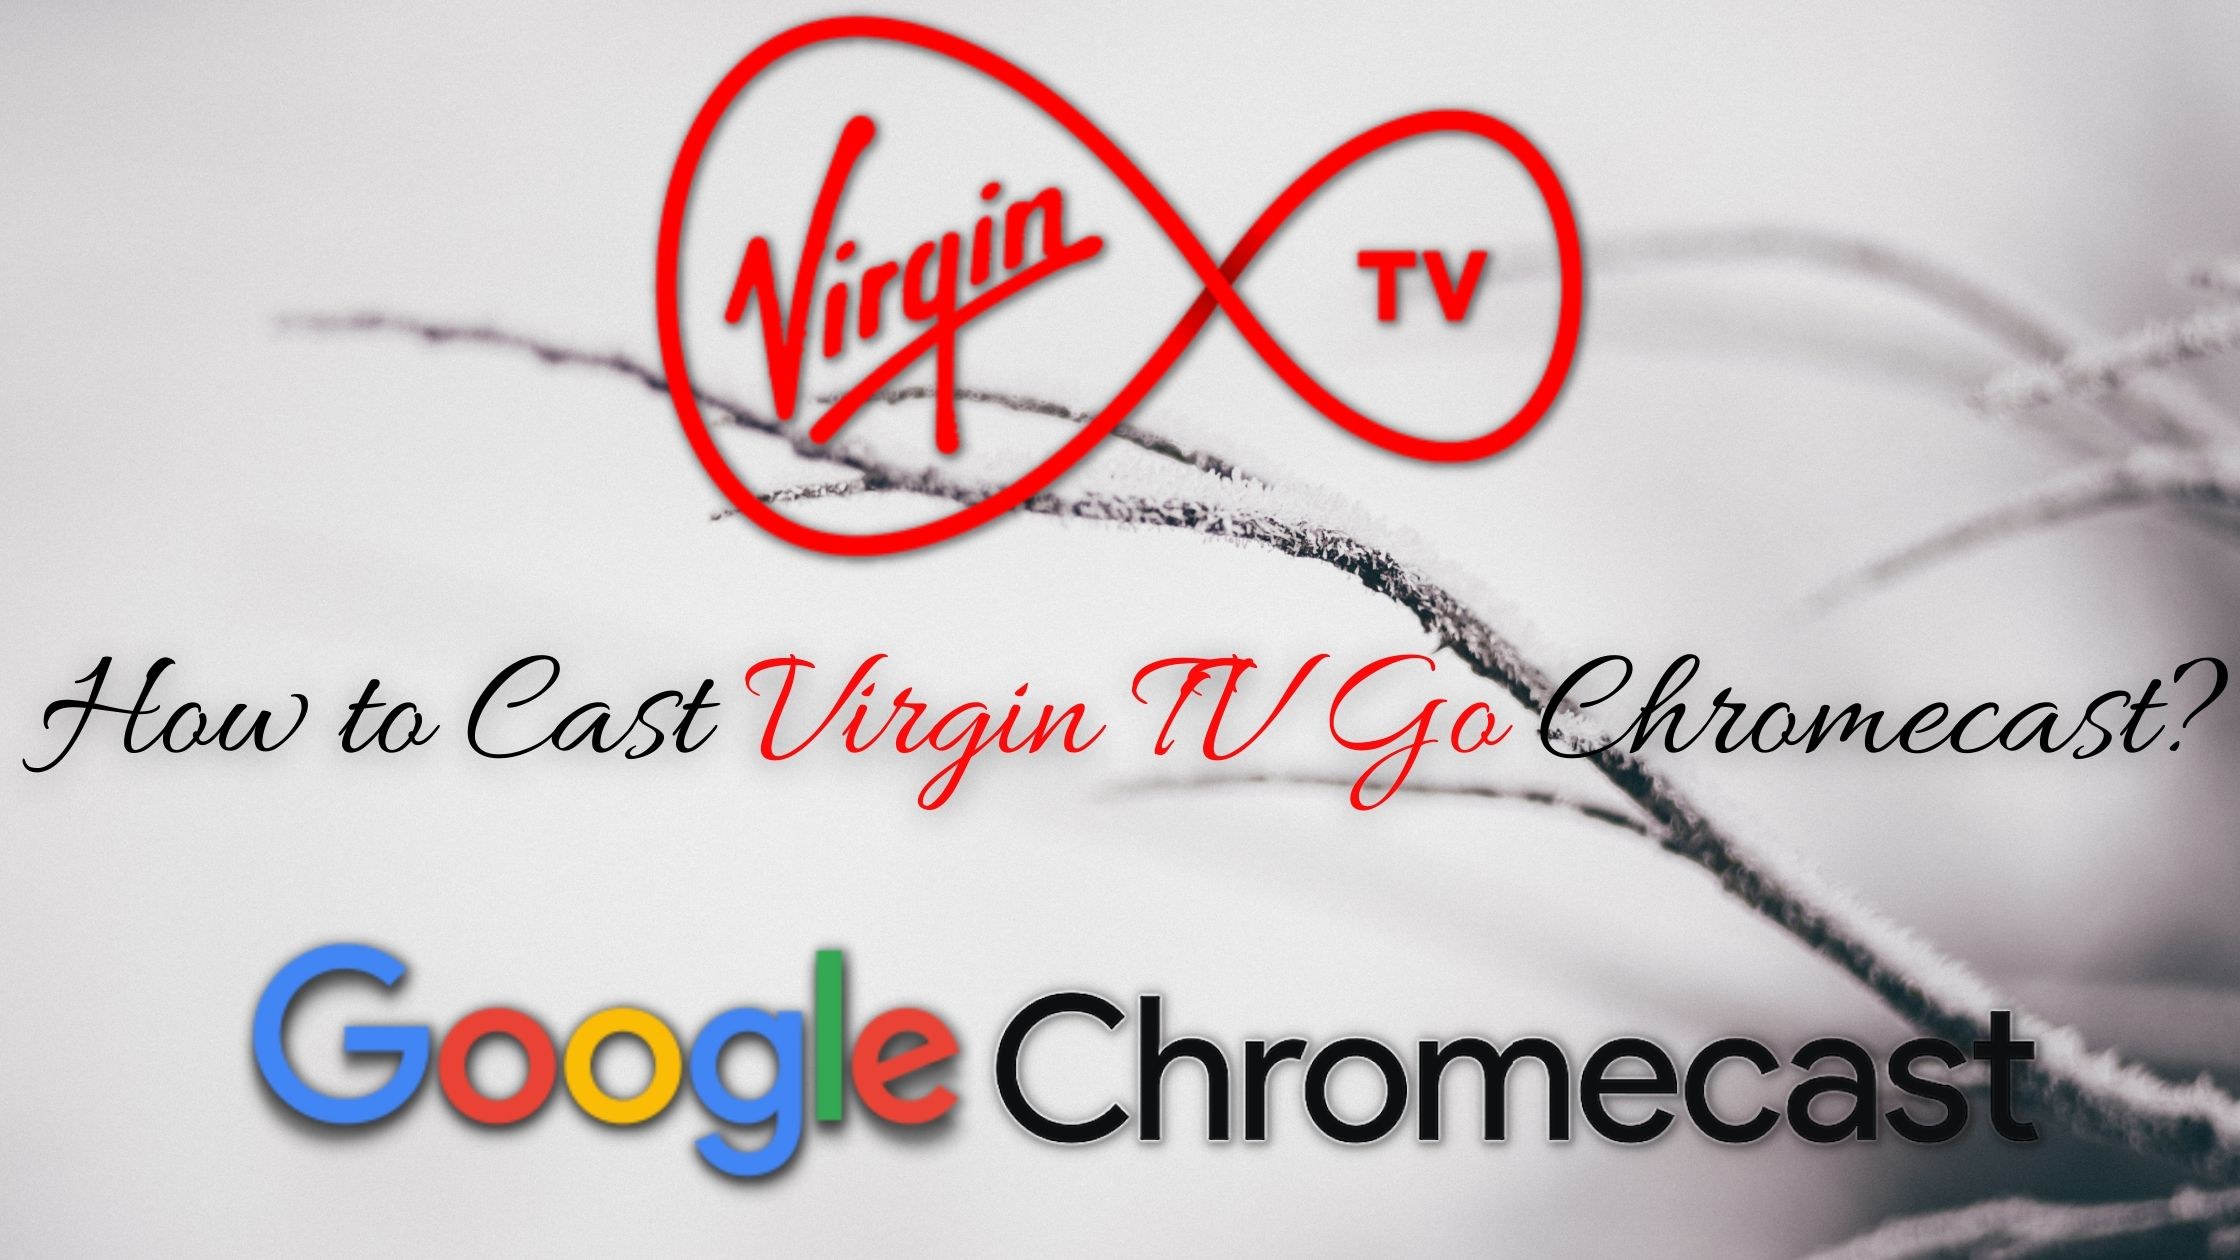 How to Cast Virgin TV Go Chromecast